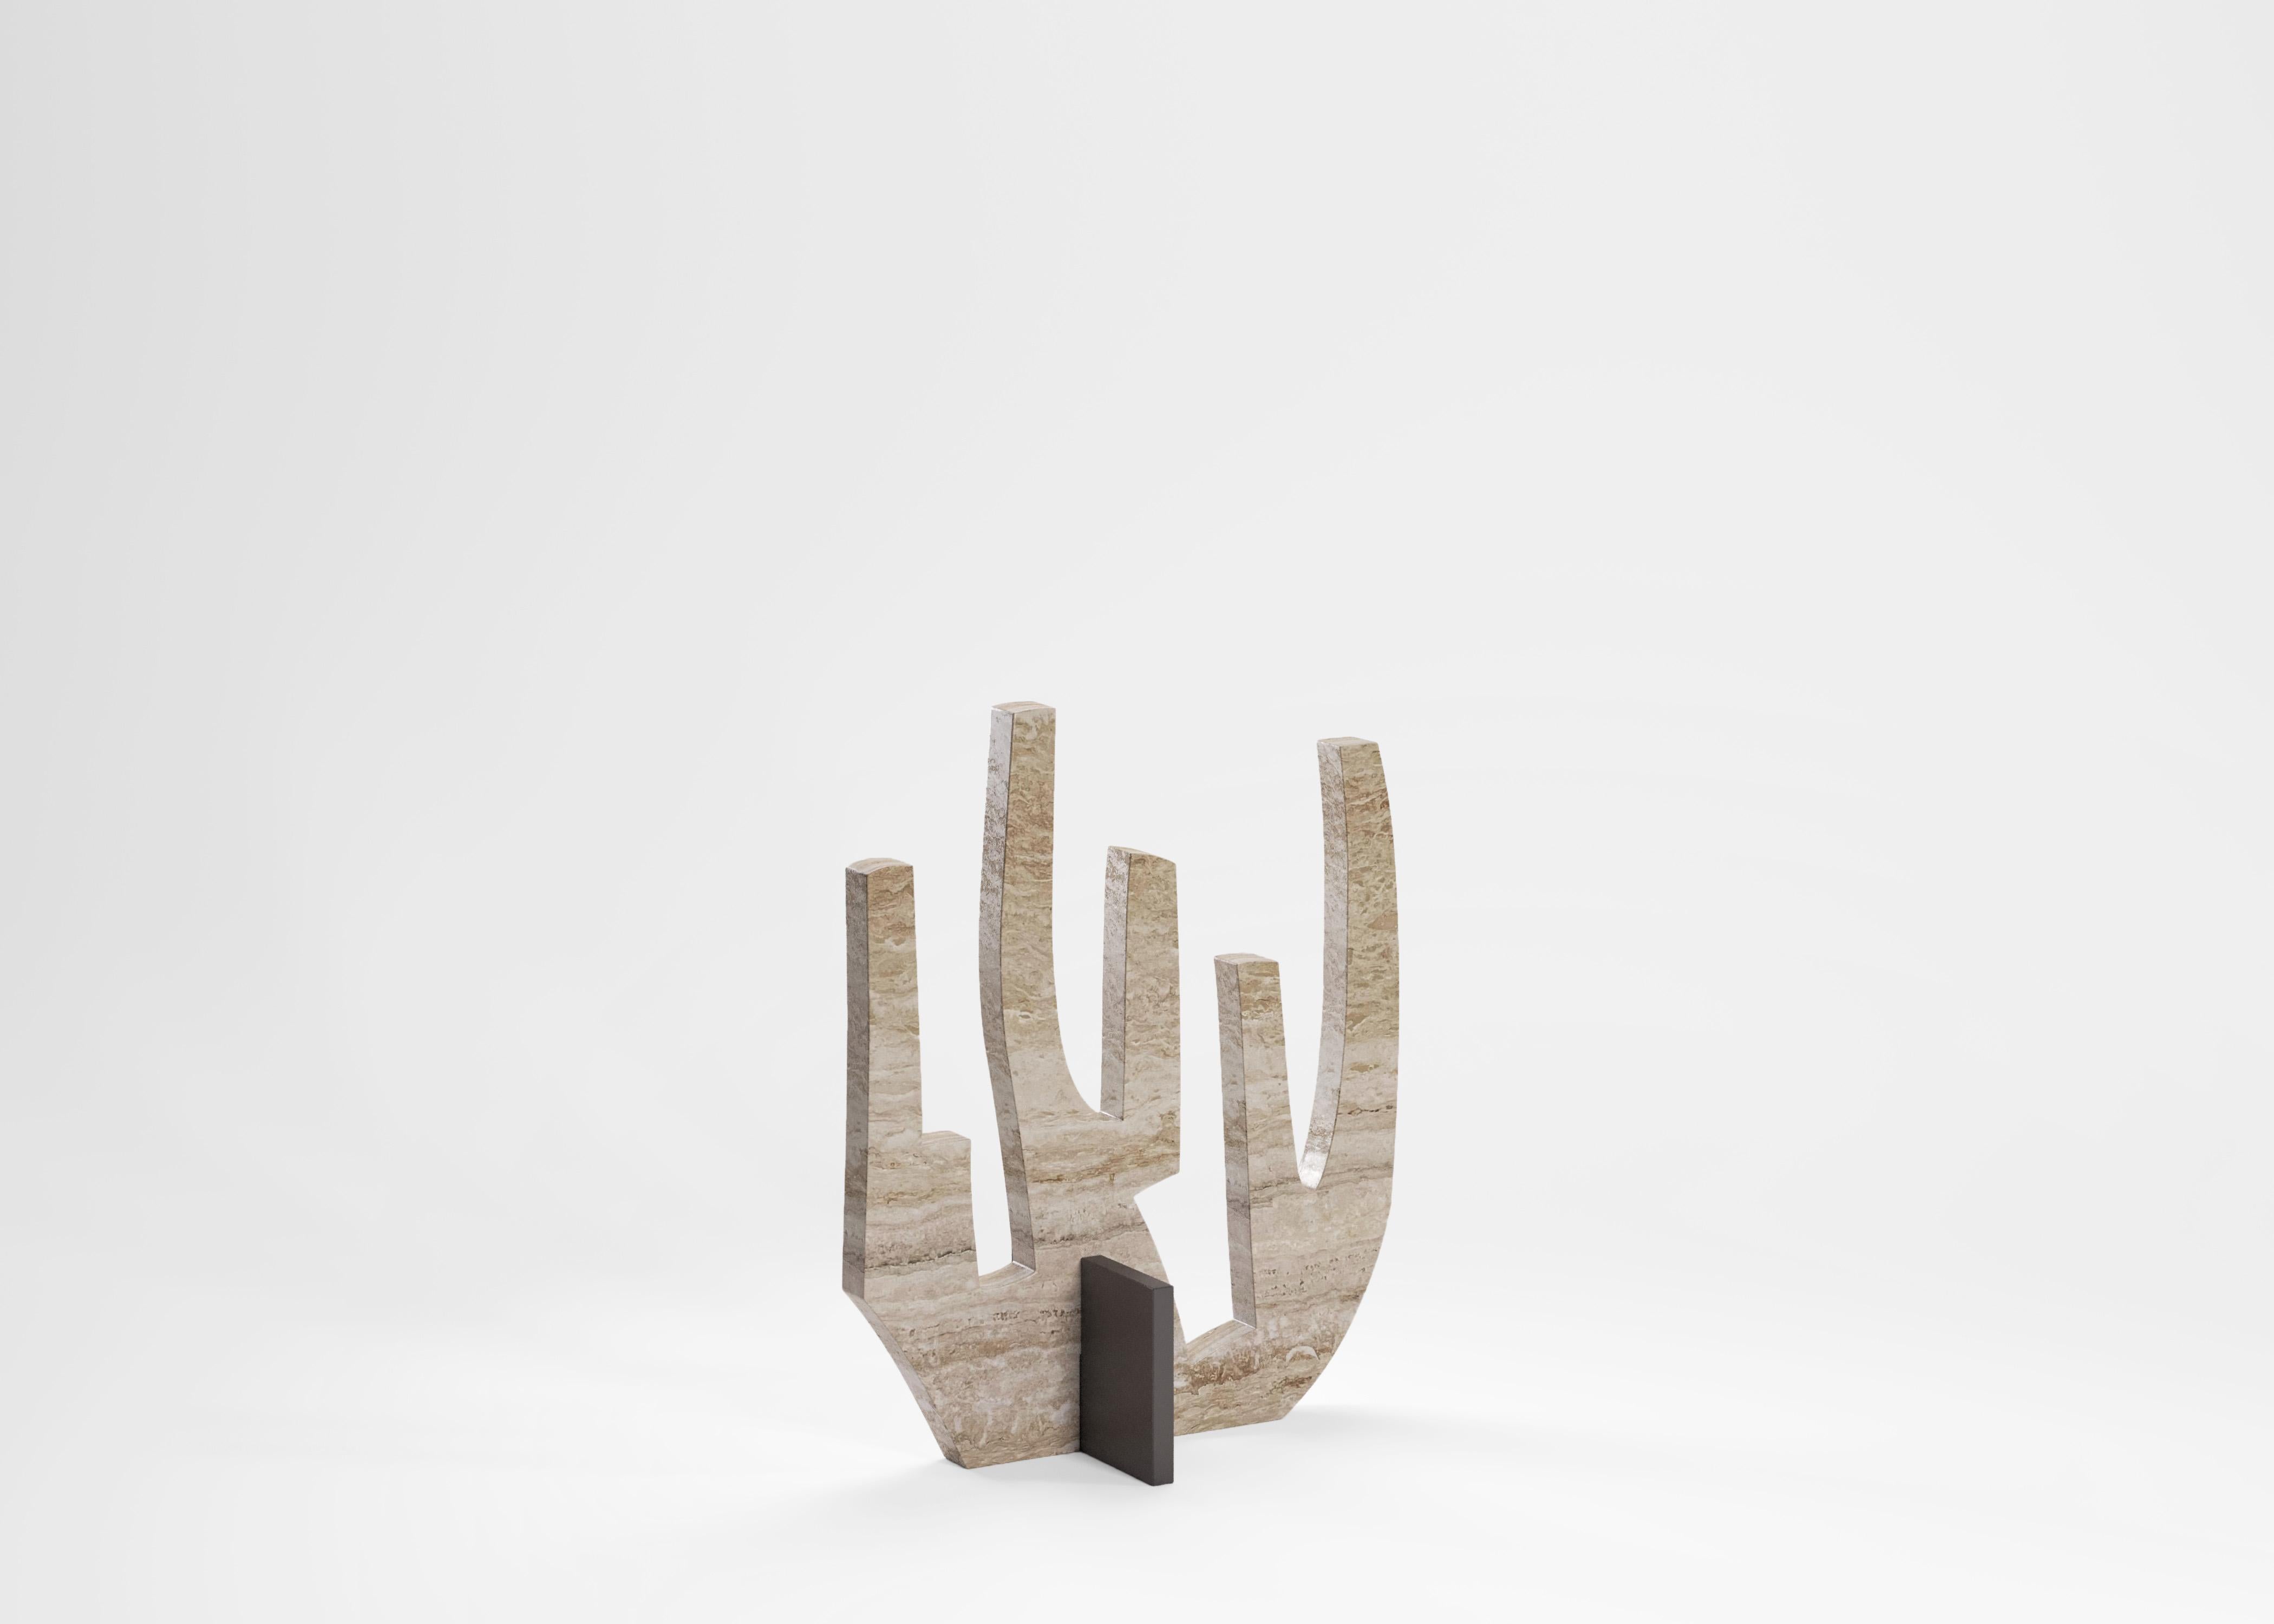 Metal Coral Sculpture by Edizione Limitata